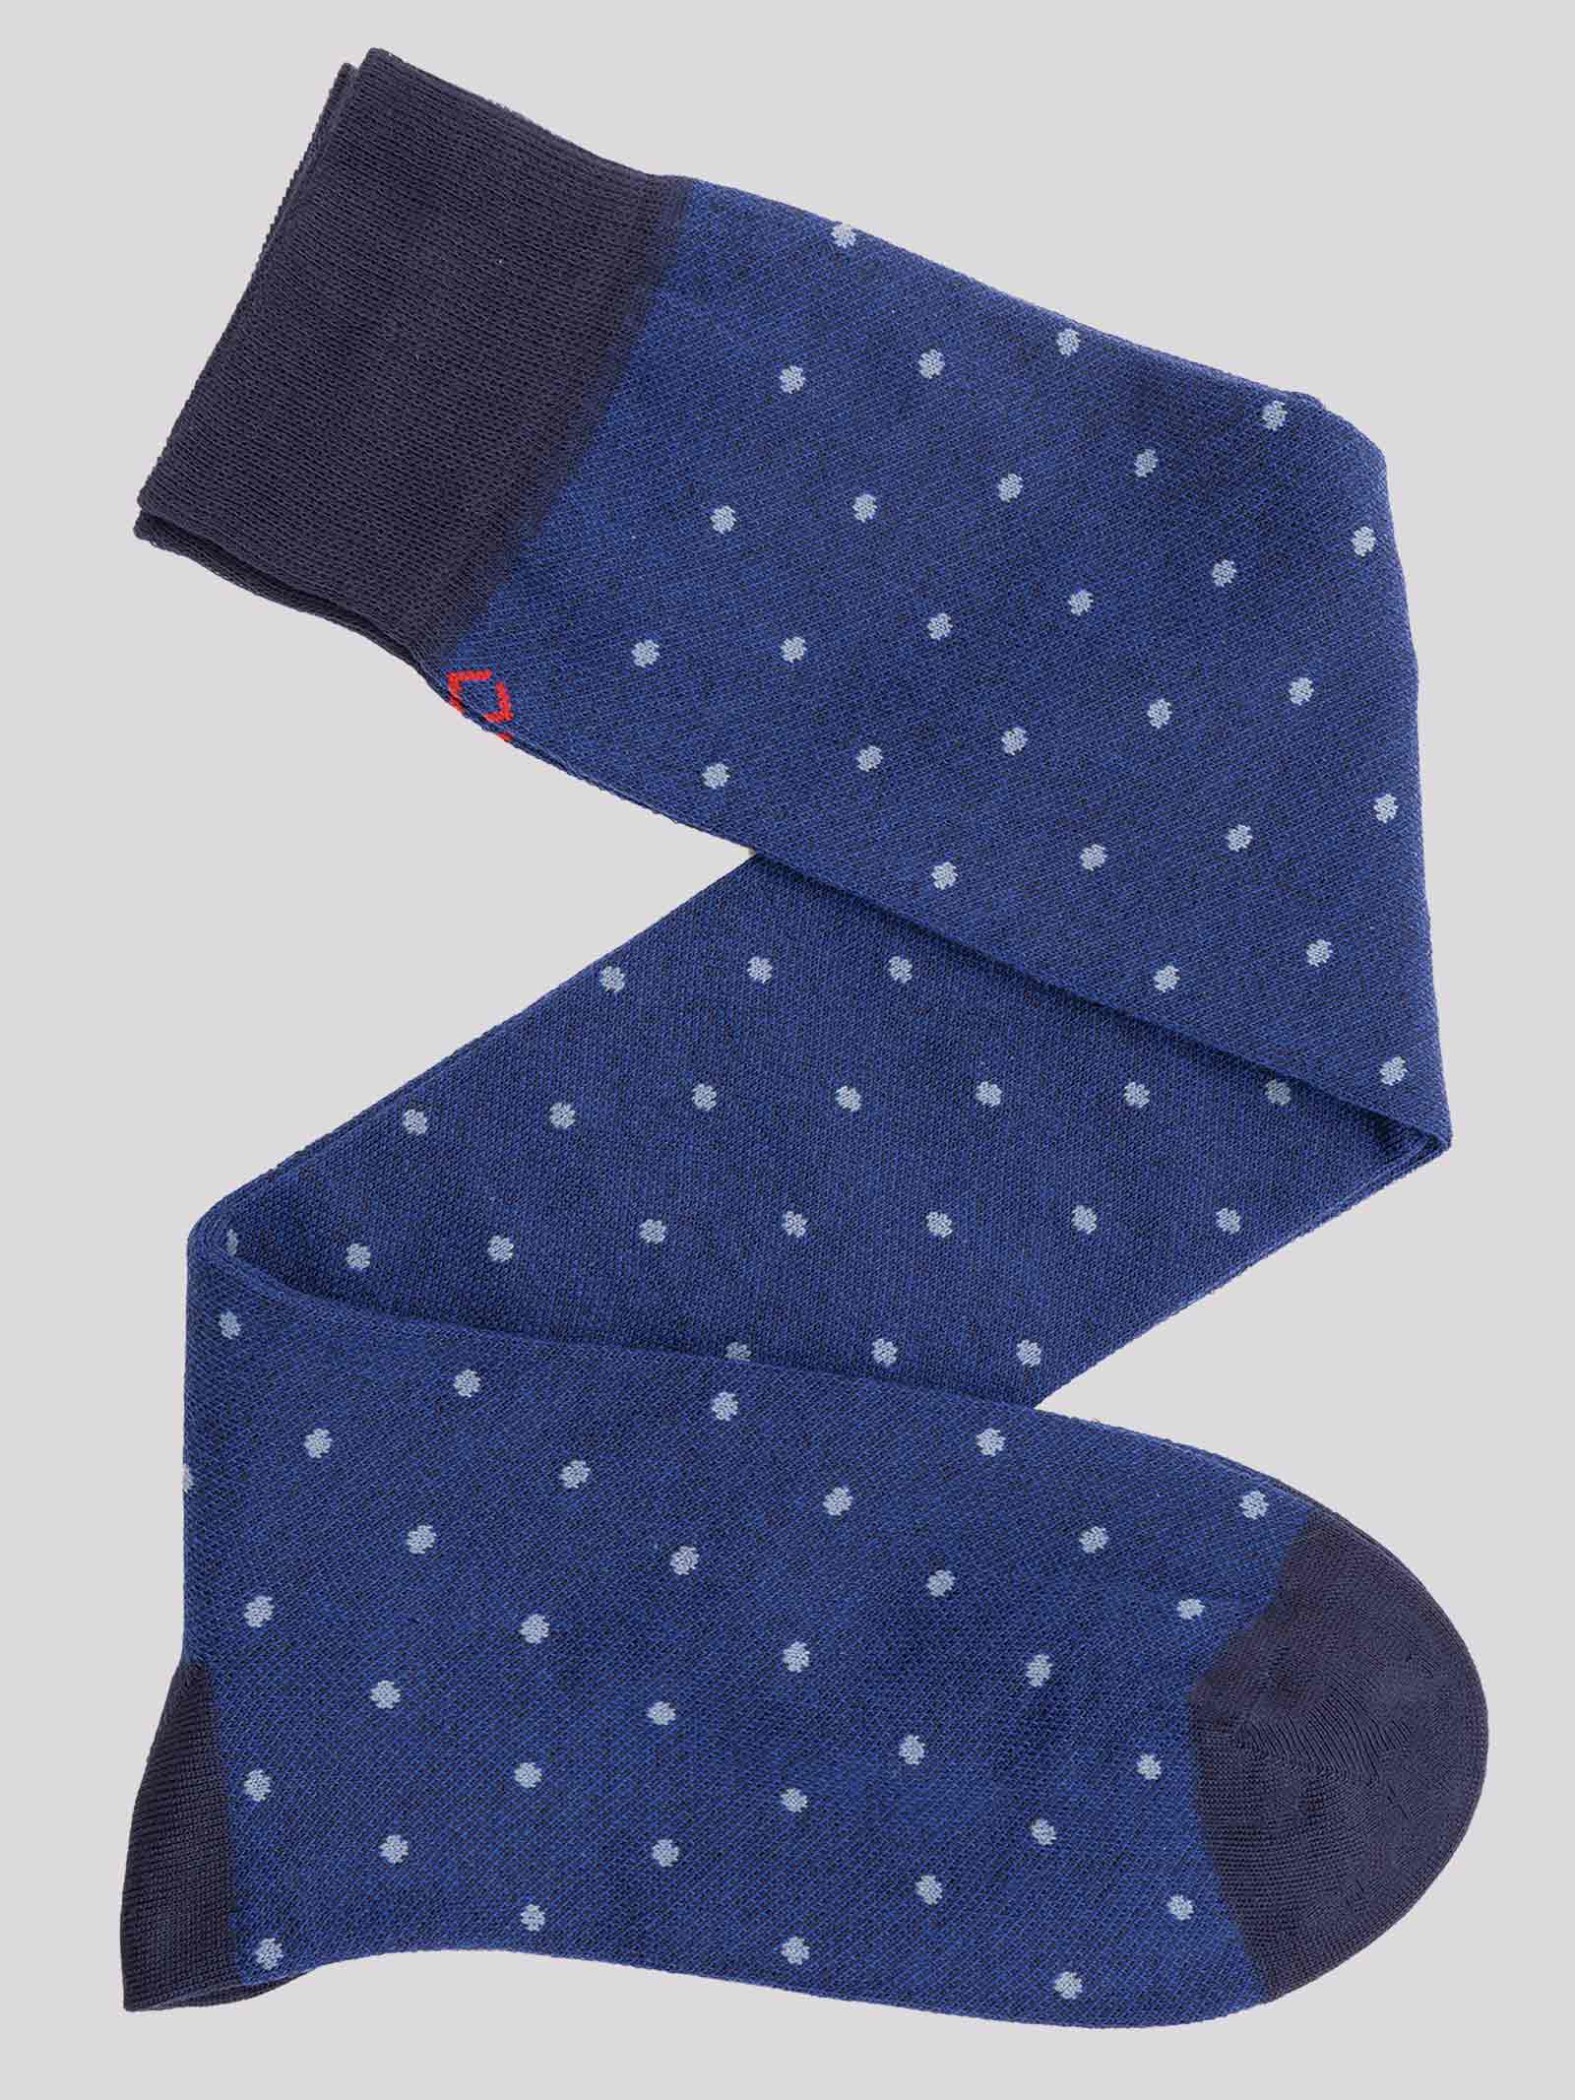 Men's monochrome polka dot patterned long socks in warm cotton